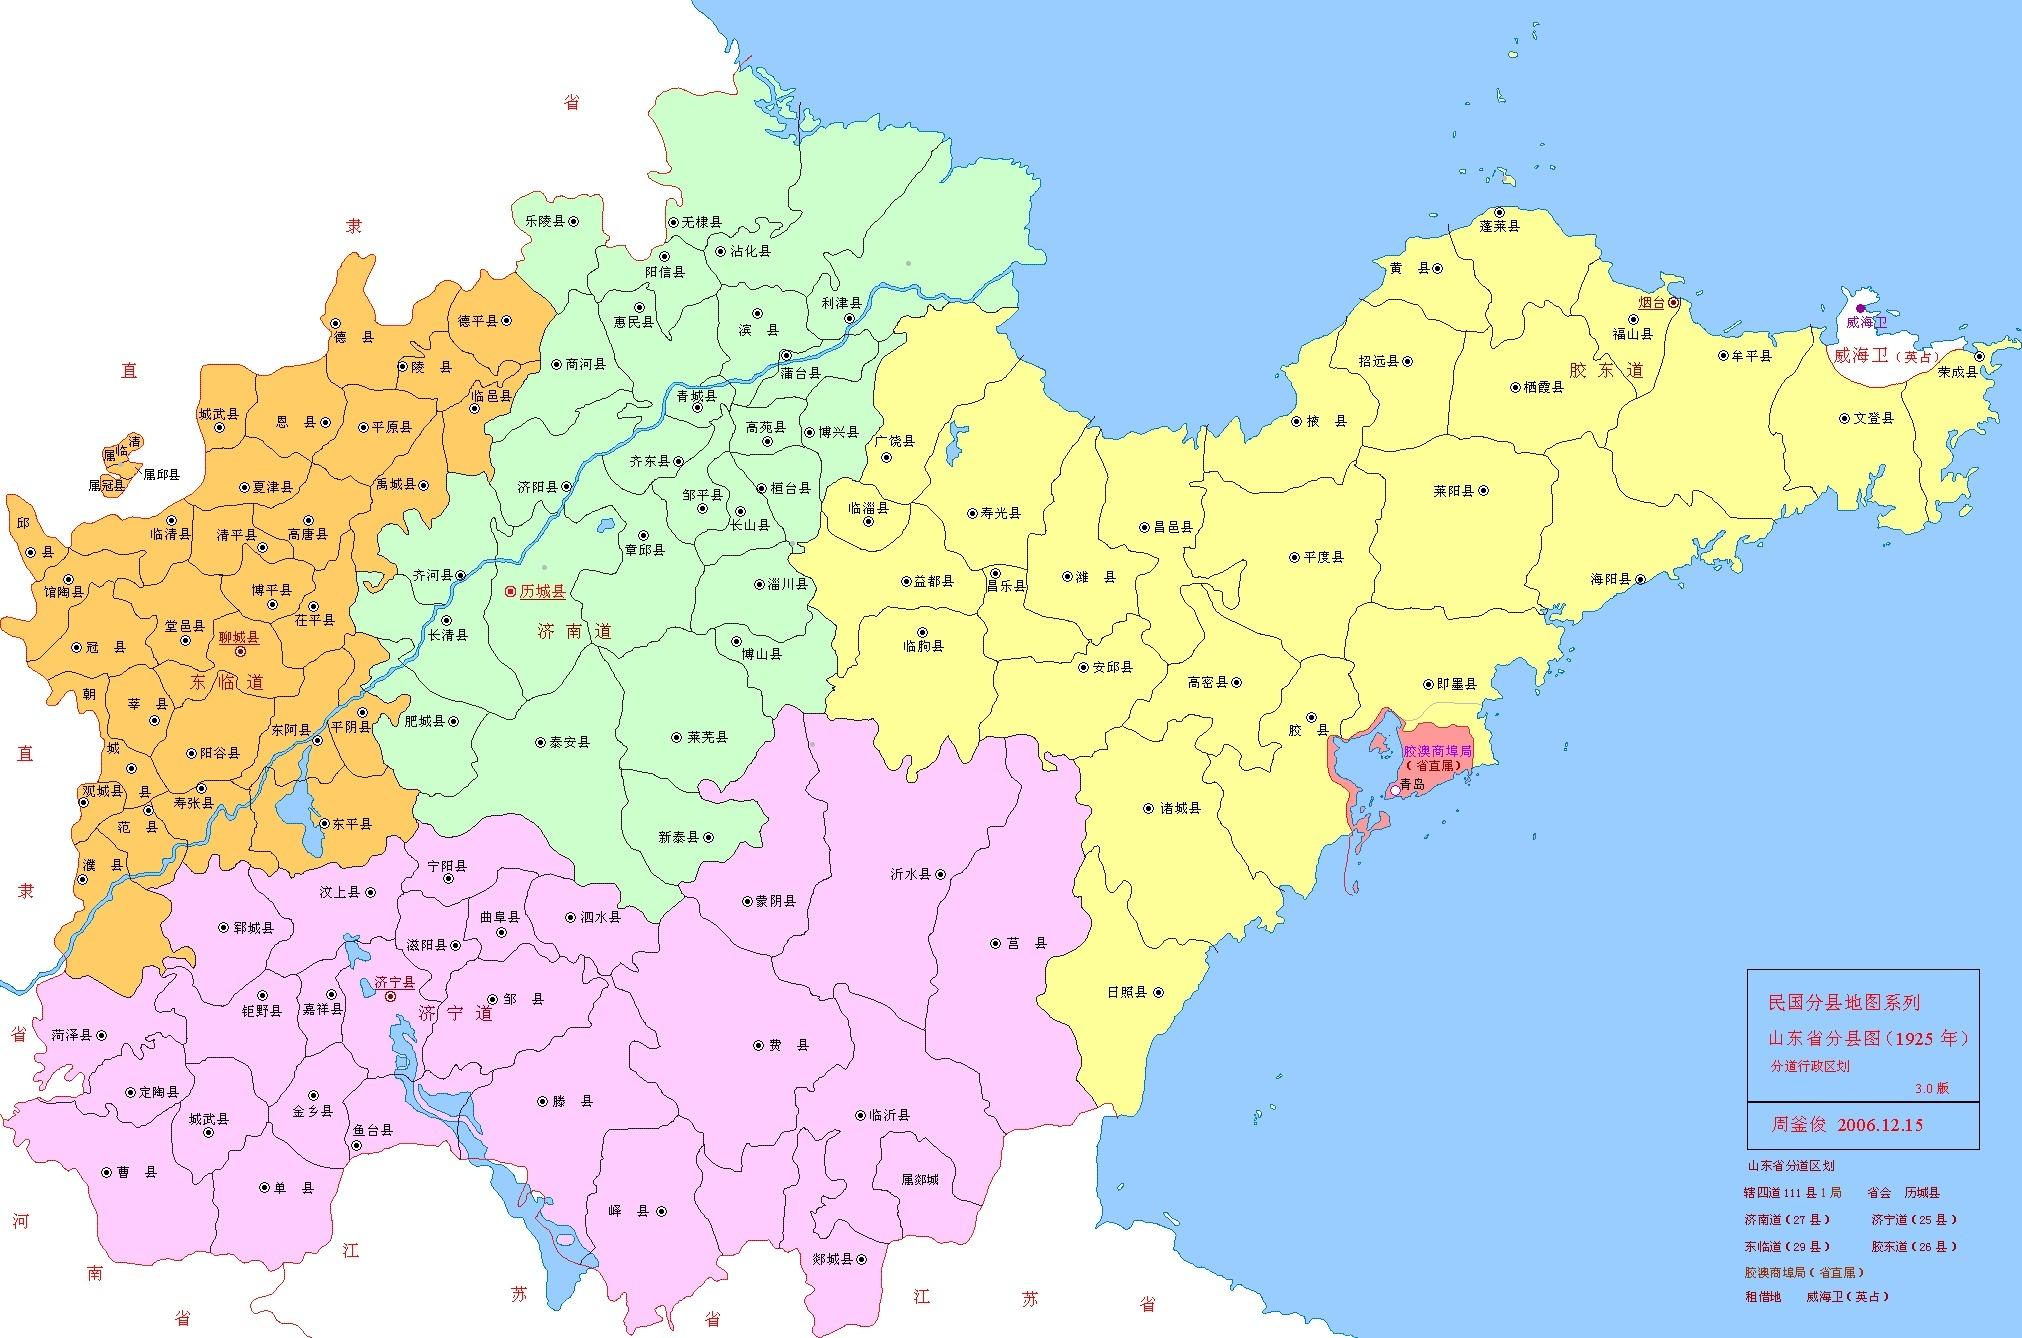 济宁道,为民国时期山东行政区划,山东省所辖4道之一.